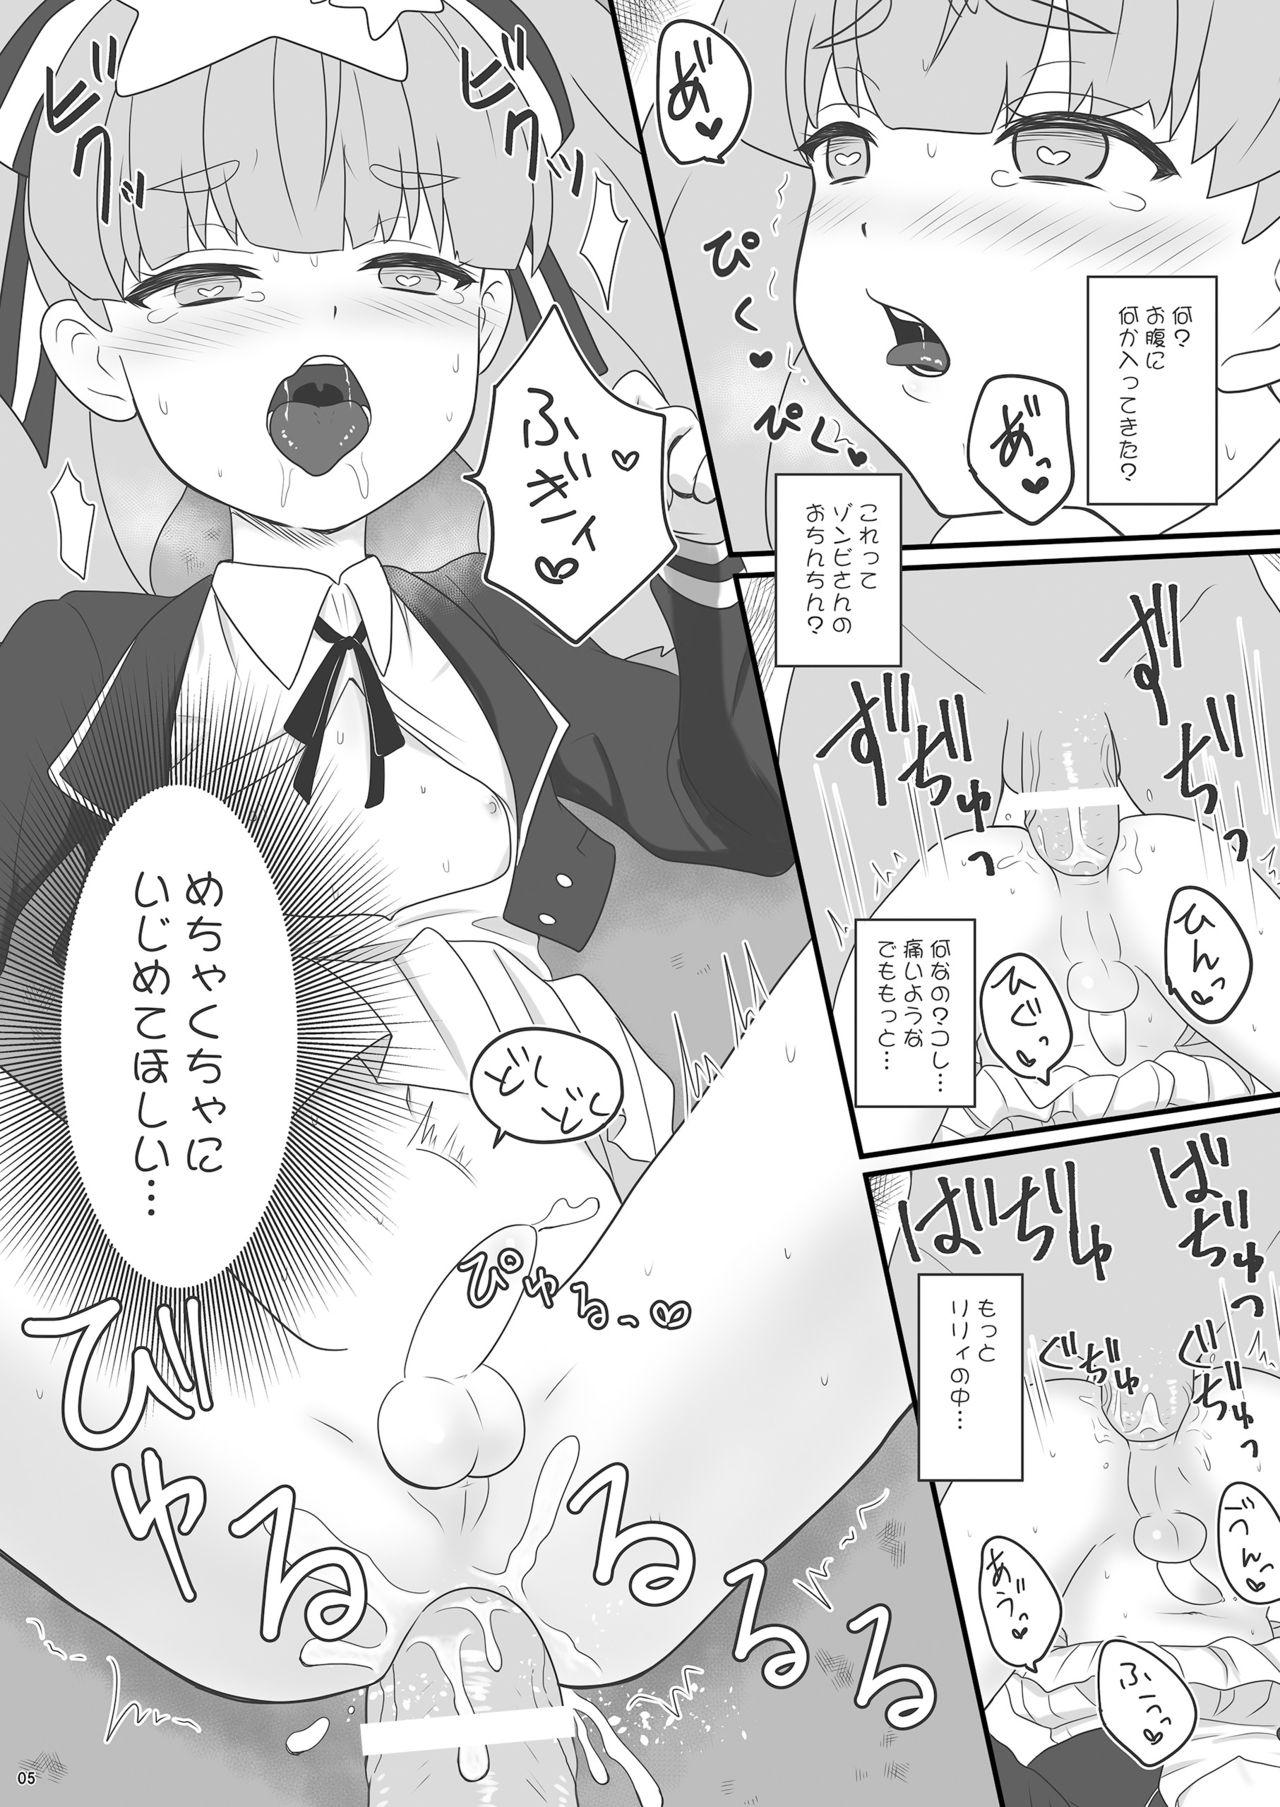 Spa Zonsagariryi-chan ga zonbi ni tane tsuke sa reru manga - Zombie land saga Work - Page 5